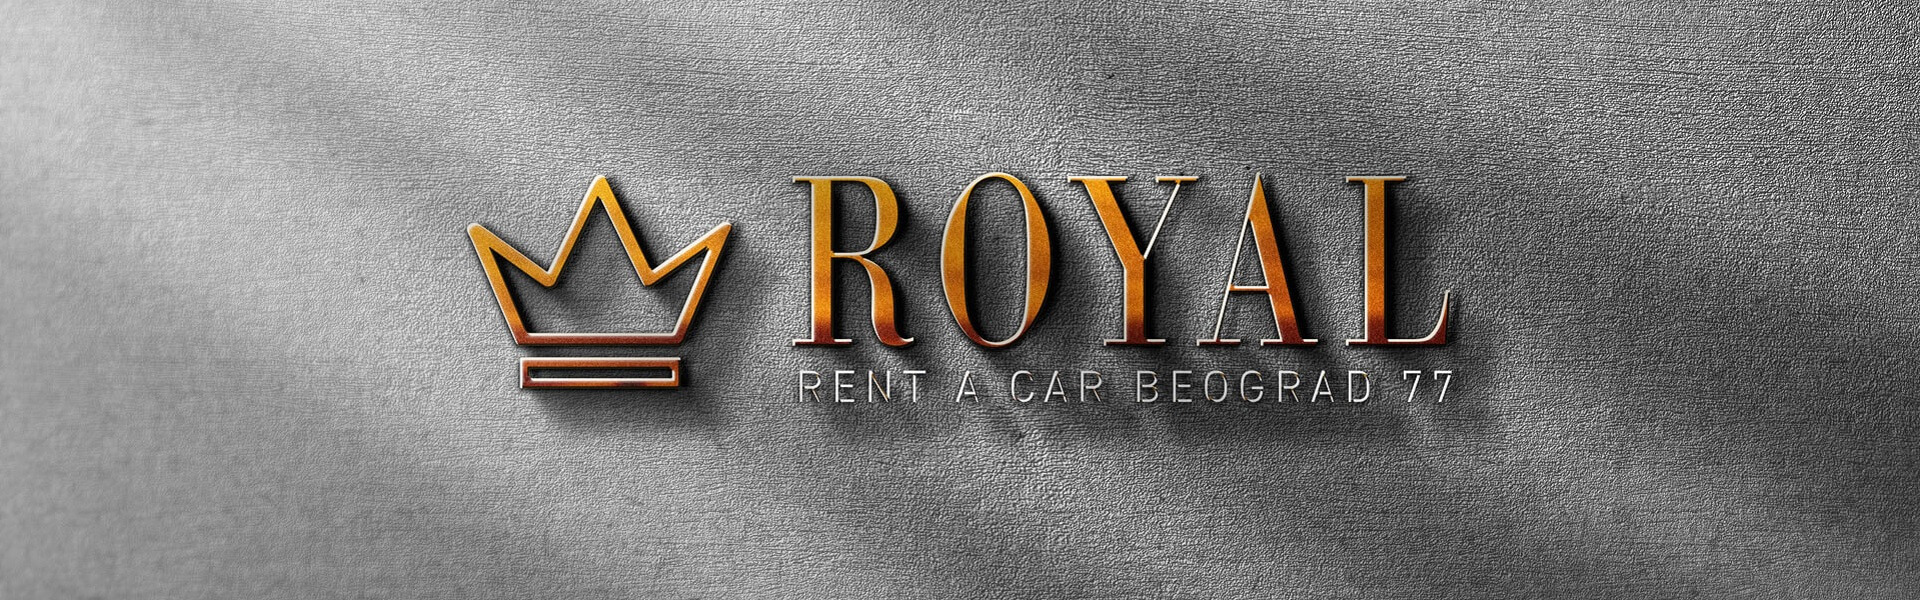 Ecomet | Car rental Beograd Royal